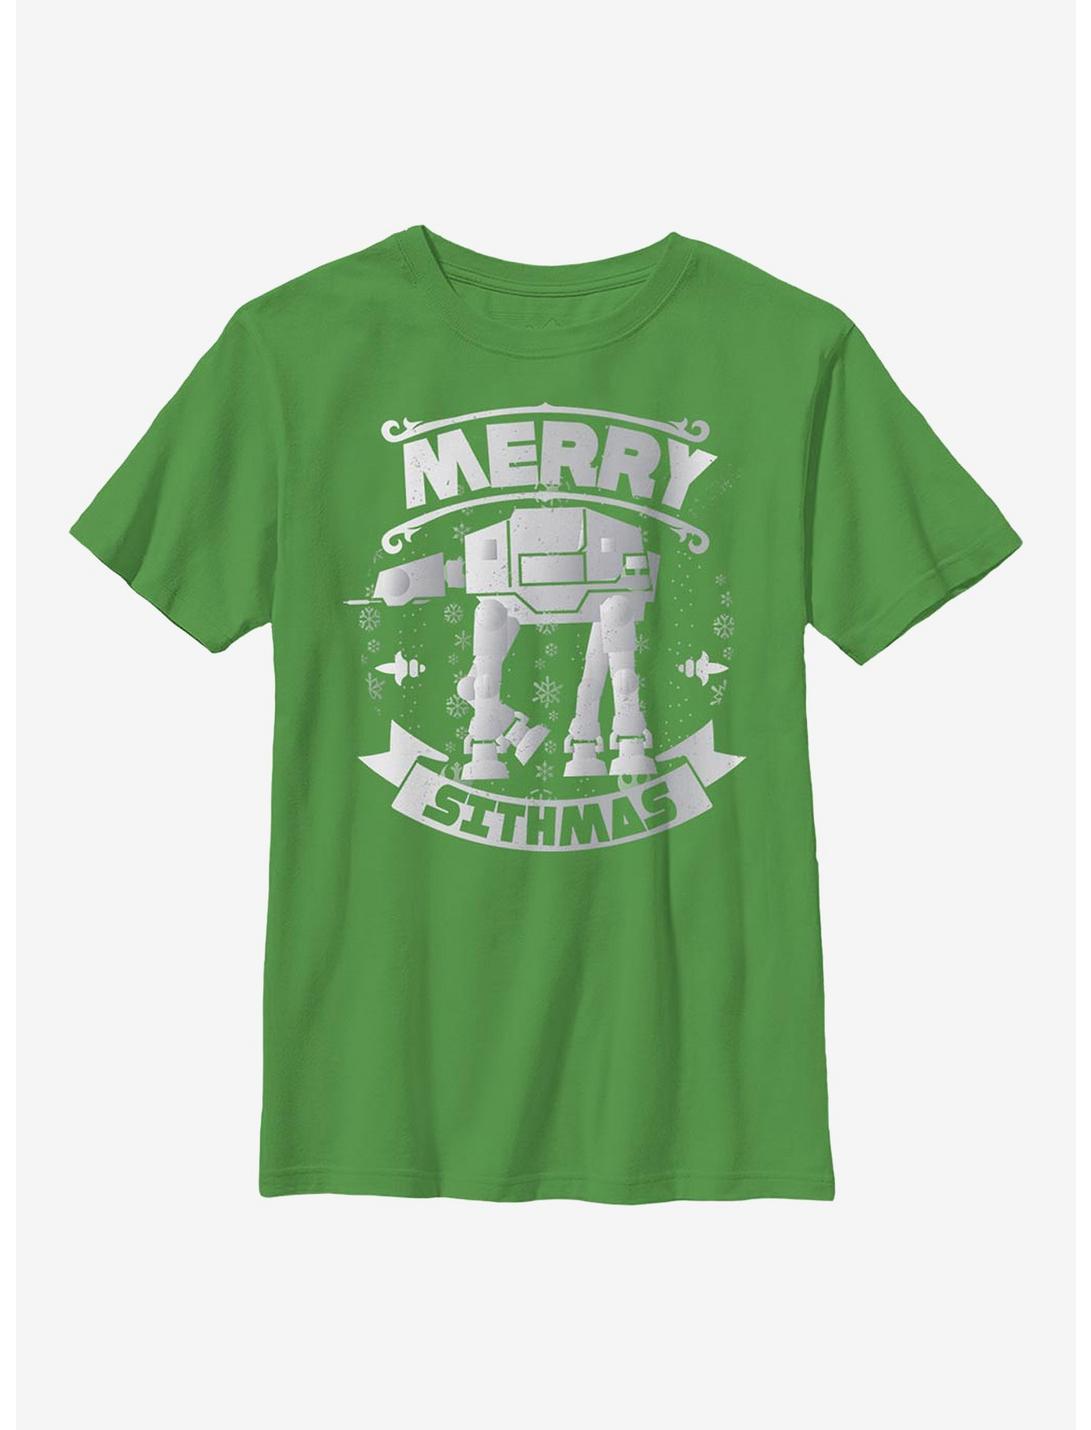 Star Wars AT-AT Sithmas Youth T-Shirt, KELLY, hi-res